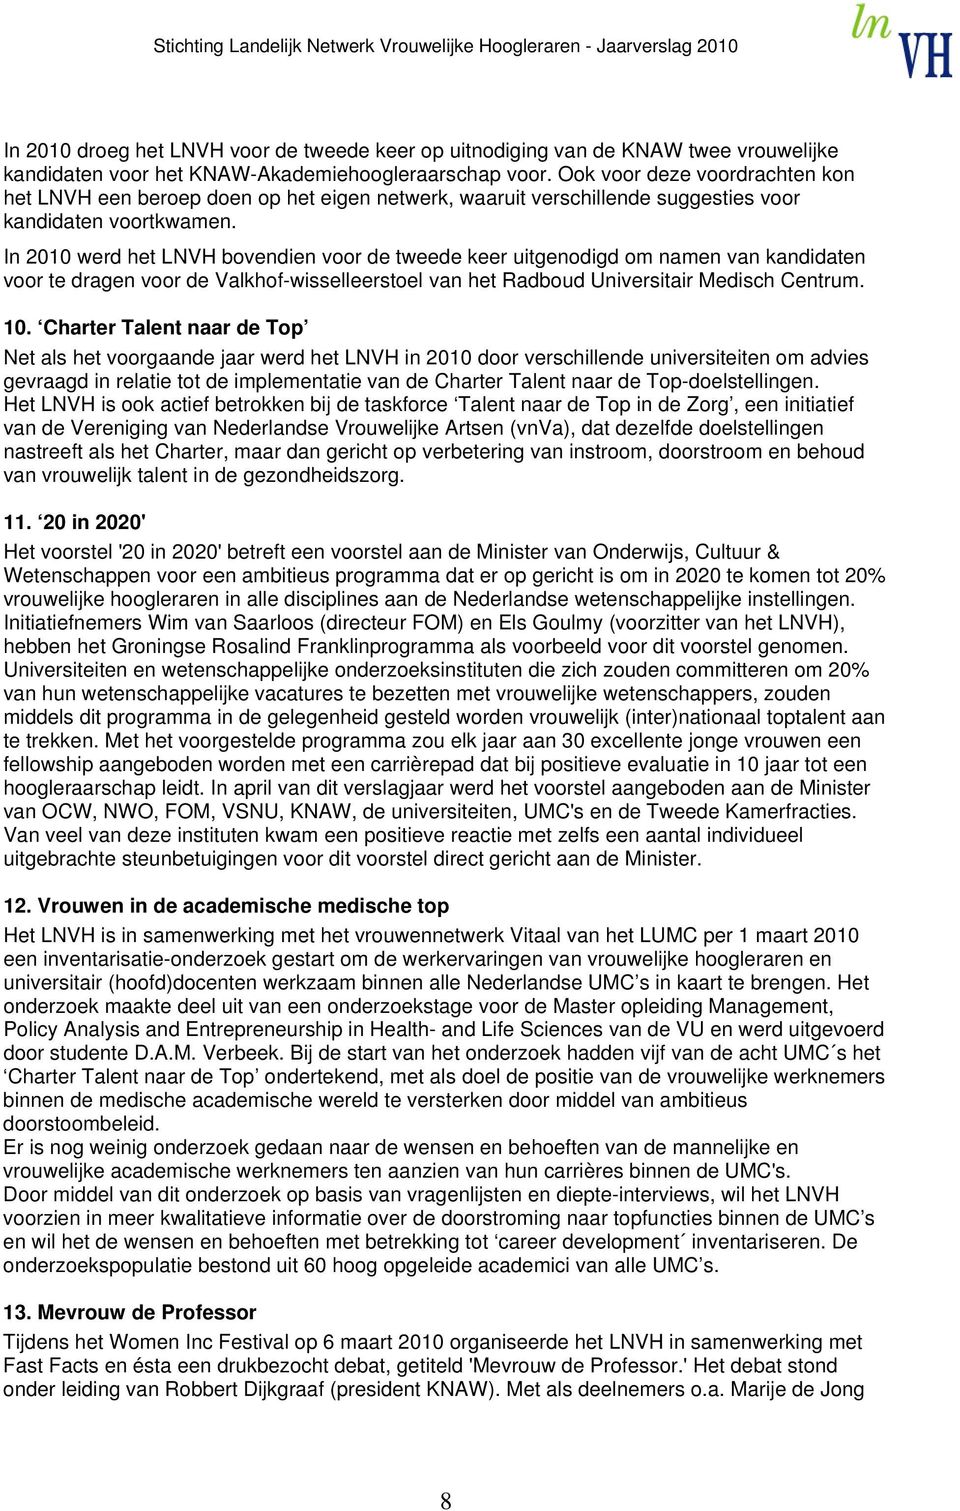 In 2010 werd het LNVH bovendien voor de tweede keer uitgenodigd om namen van kandidaten voor te dragen voor de Valkhof-wisselleerstoel van het Radboud Universitair Medisch Centrum. 10.